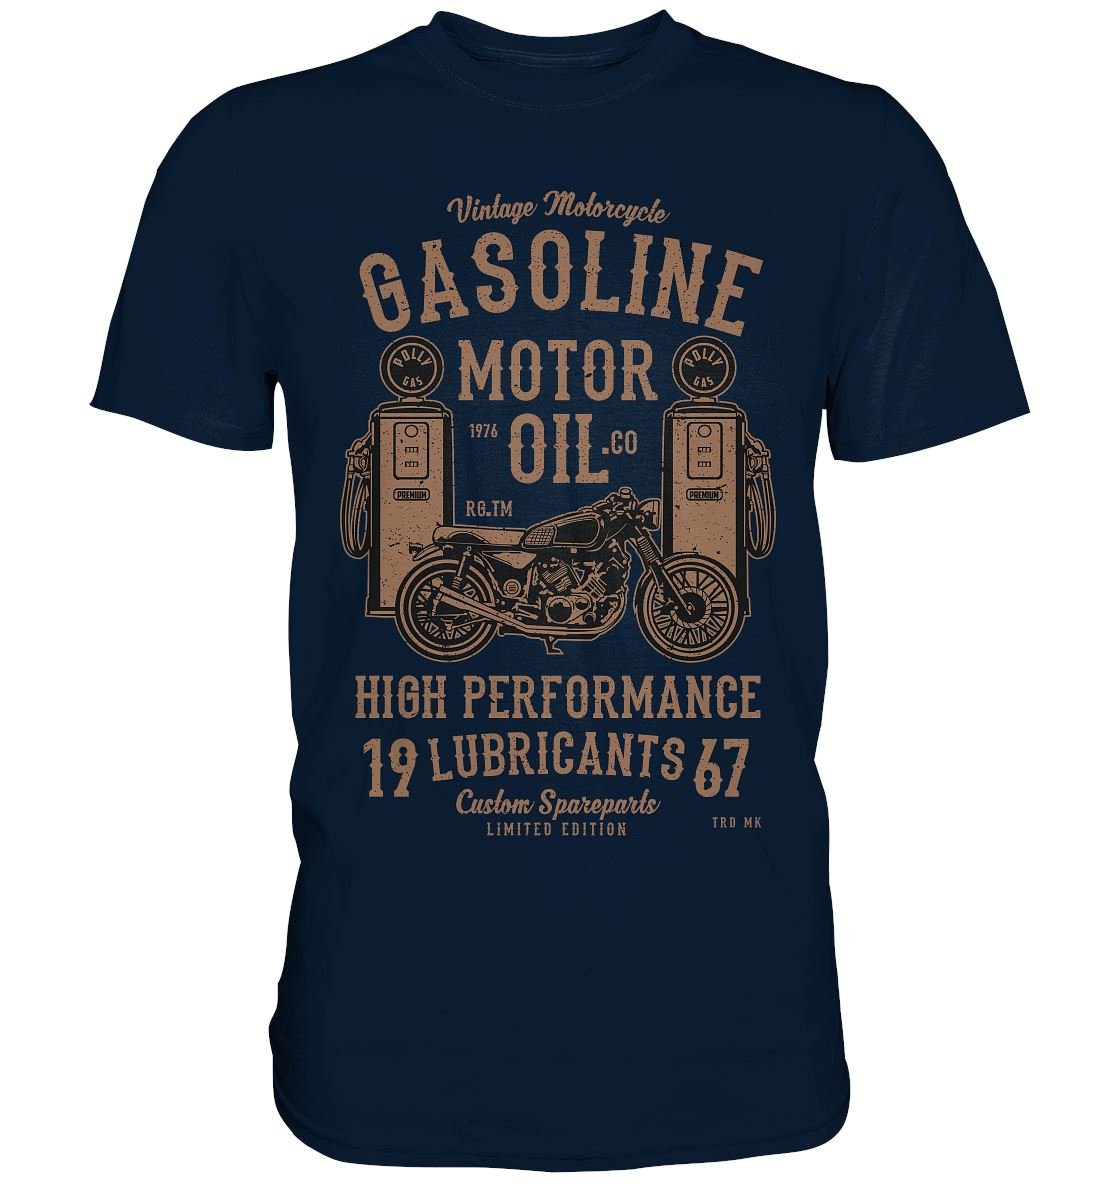 Gasoline Motor Oil - Premium Shirt - BINYA